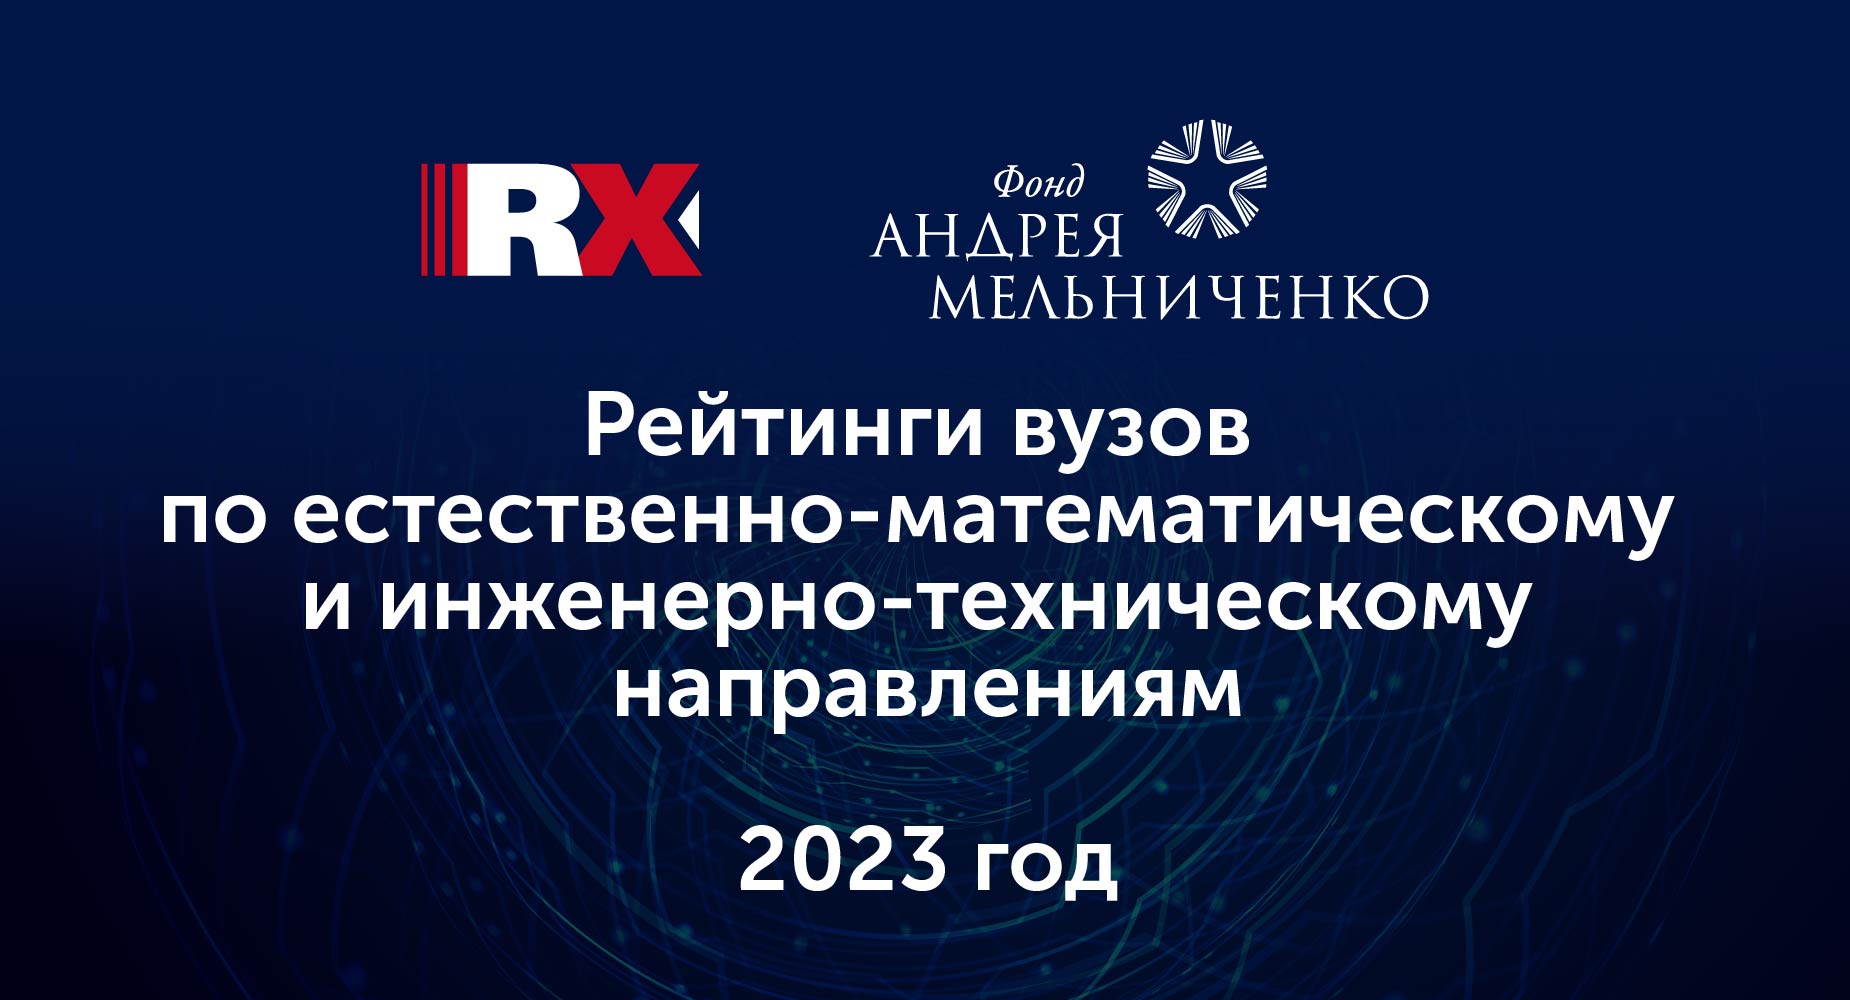 Фонд Андрея Мельниченко - Агентство RAEX при поддержке Фонда Андрея Мельниченко обновило рейтинги вузов 